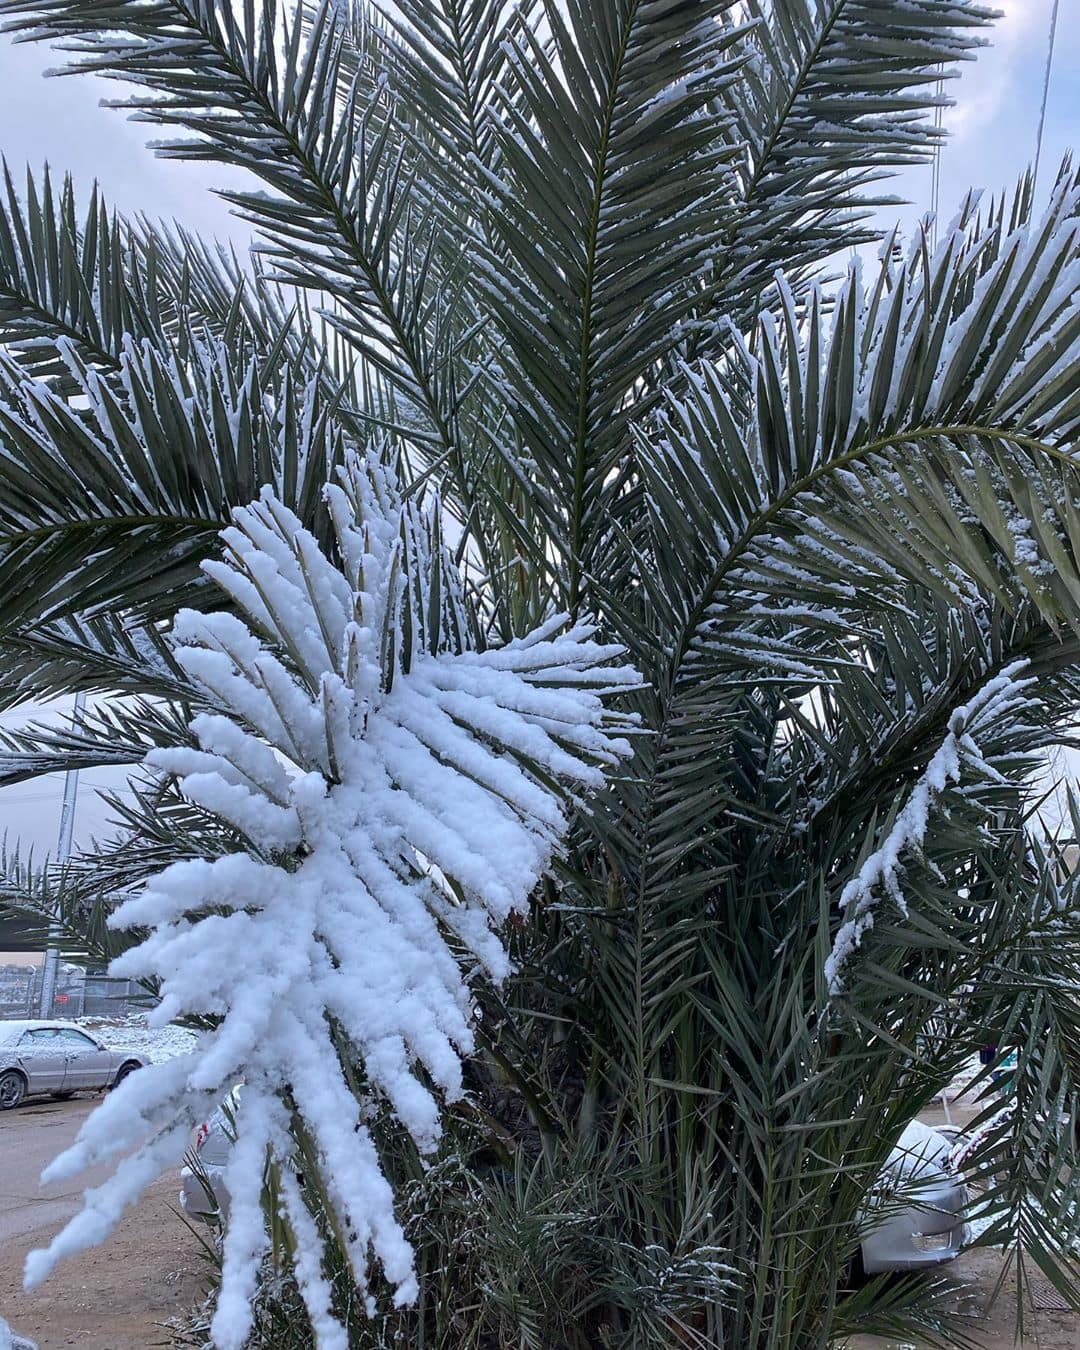 В Багдаде впервые за 12 лет выпал снег, и местные использовали его по максимуму, сделав фото со всех ракурсов! 61